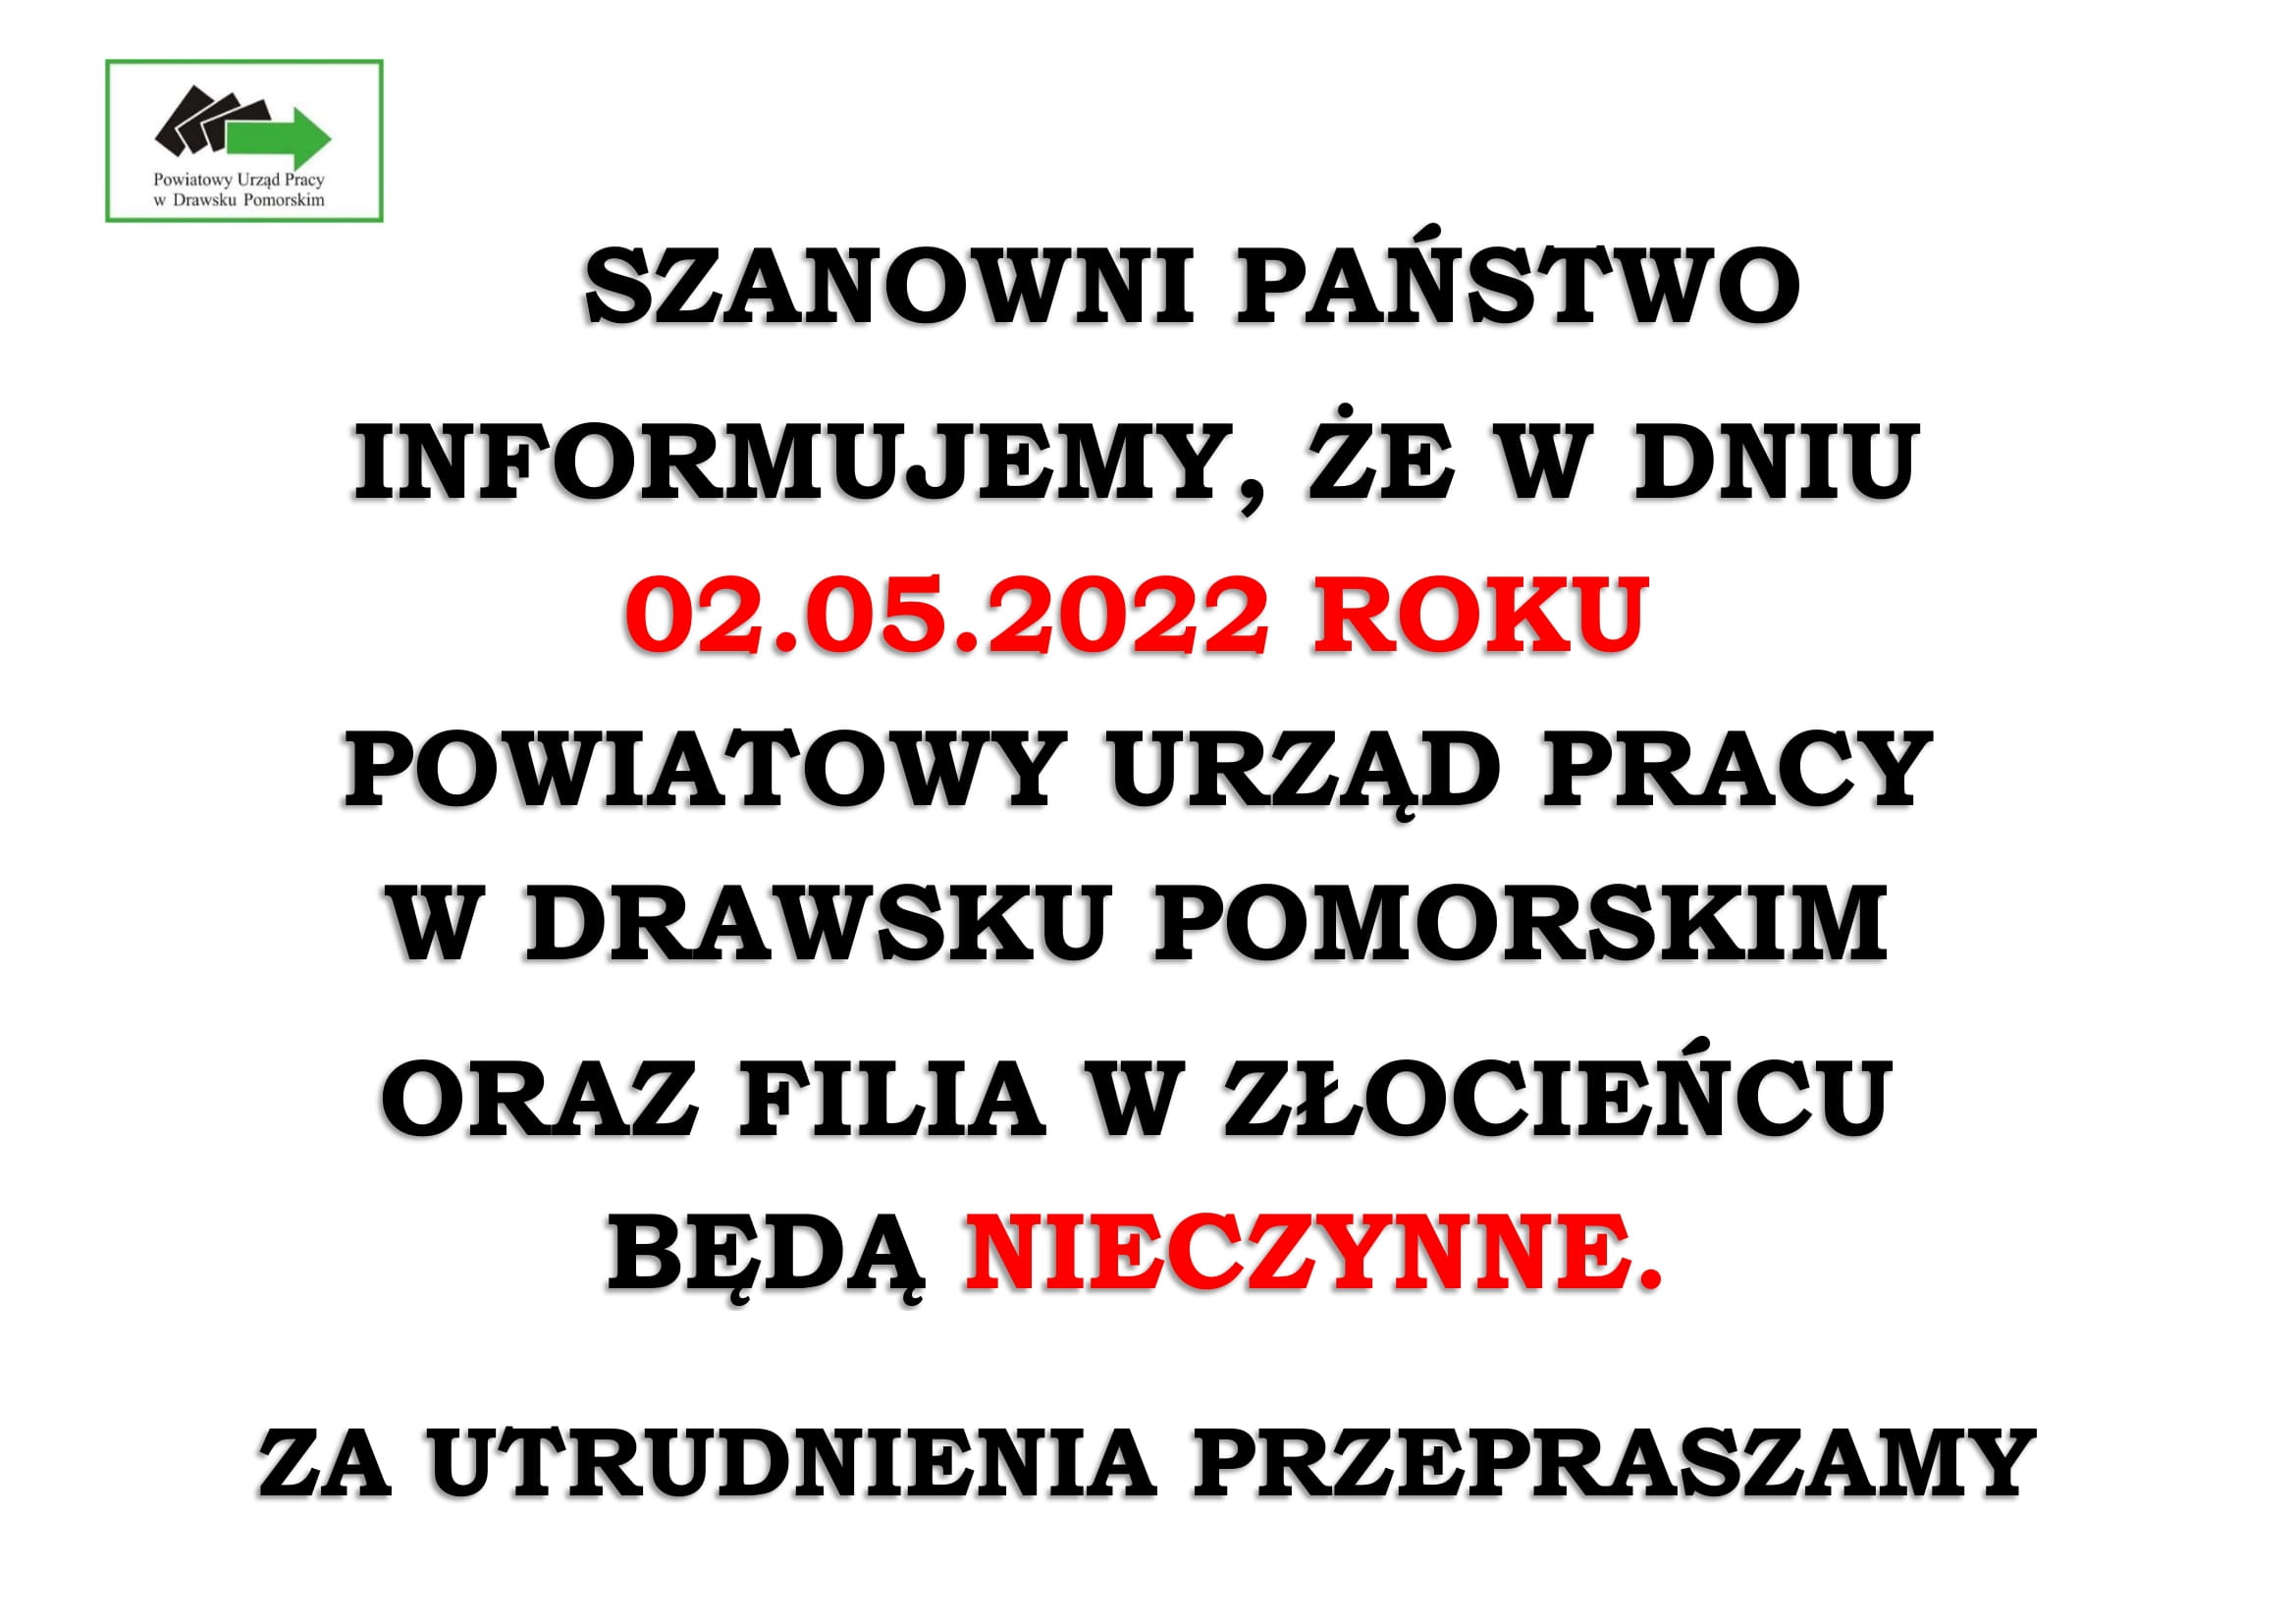 Powiatowy Urząd Pracy w Drawsku Pomorskim oraz i Filia w Złocieńcu w dniu 02.05.2022 r. jest nieczynny. Za utrudnienia przepraszamy